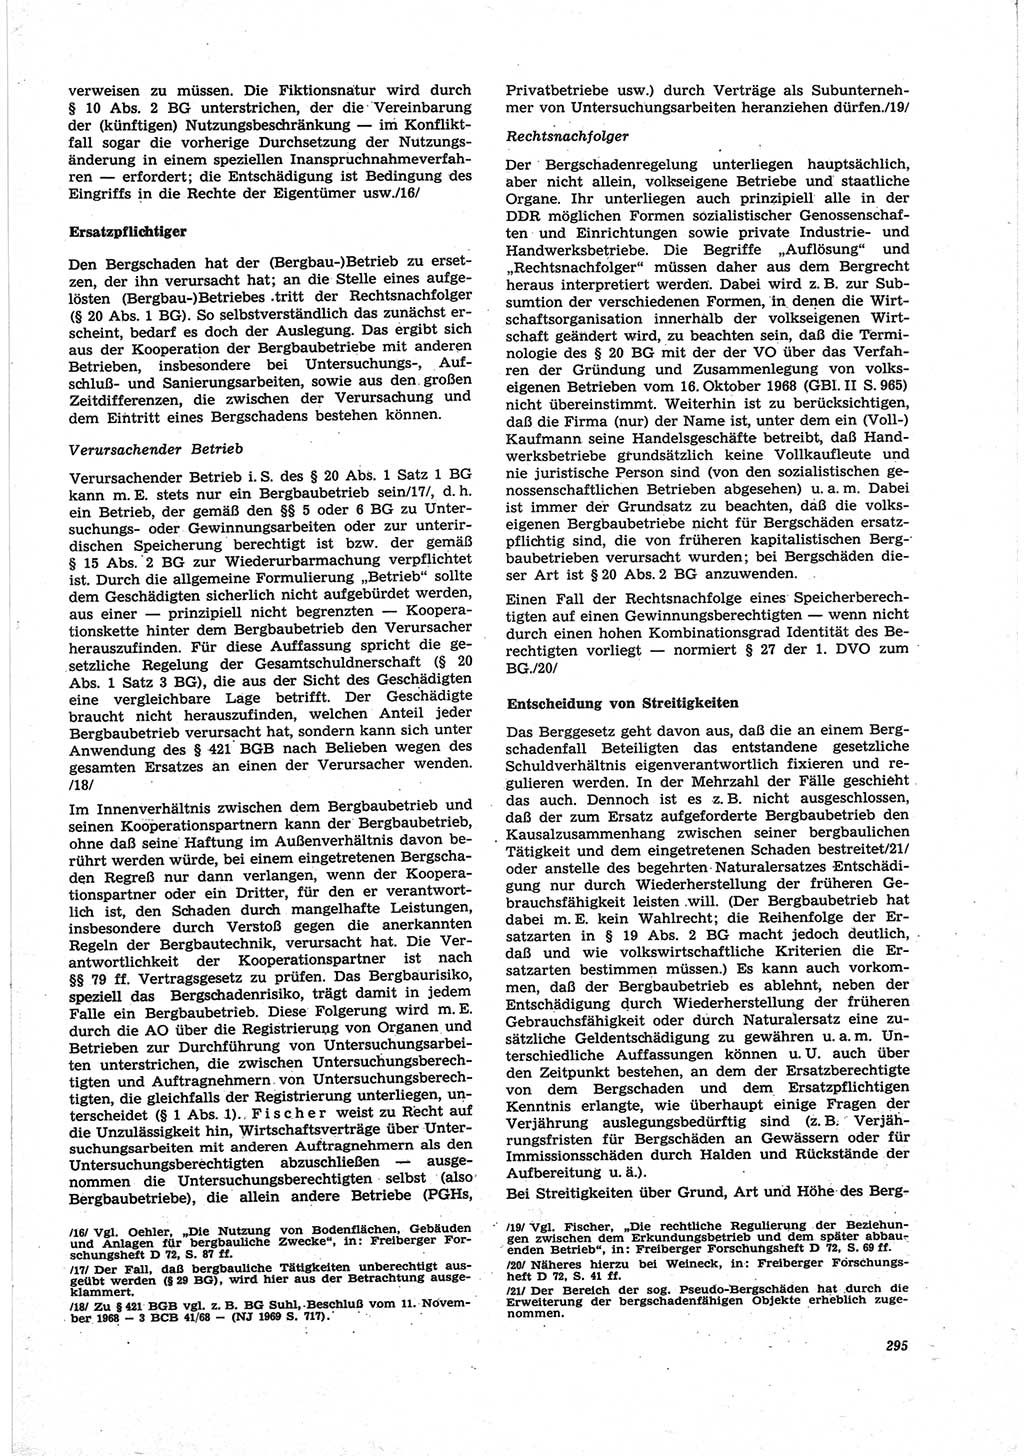 Neue Justiz (NJ), Zeitschrift für Recht und Rechtswissenschaft [Deutsche Demokratische Republik (DDR)], 25. Jahrgang 1971, Seite 295 (NJ DDR 1971, S. 295)